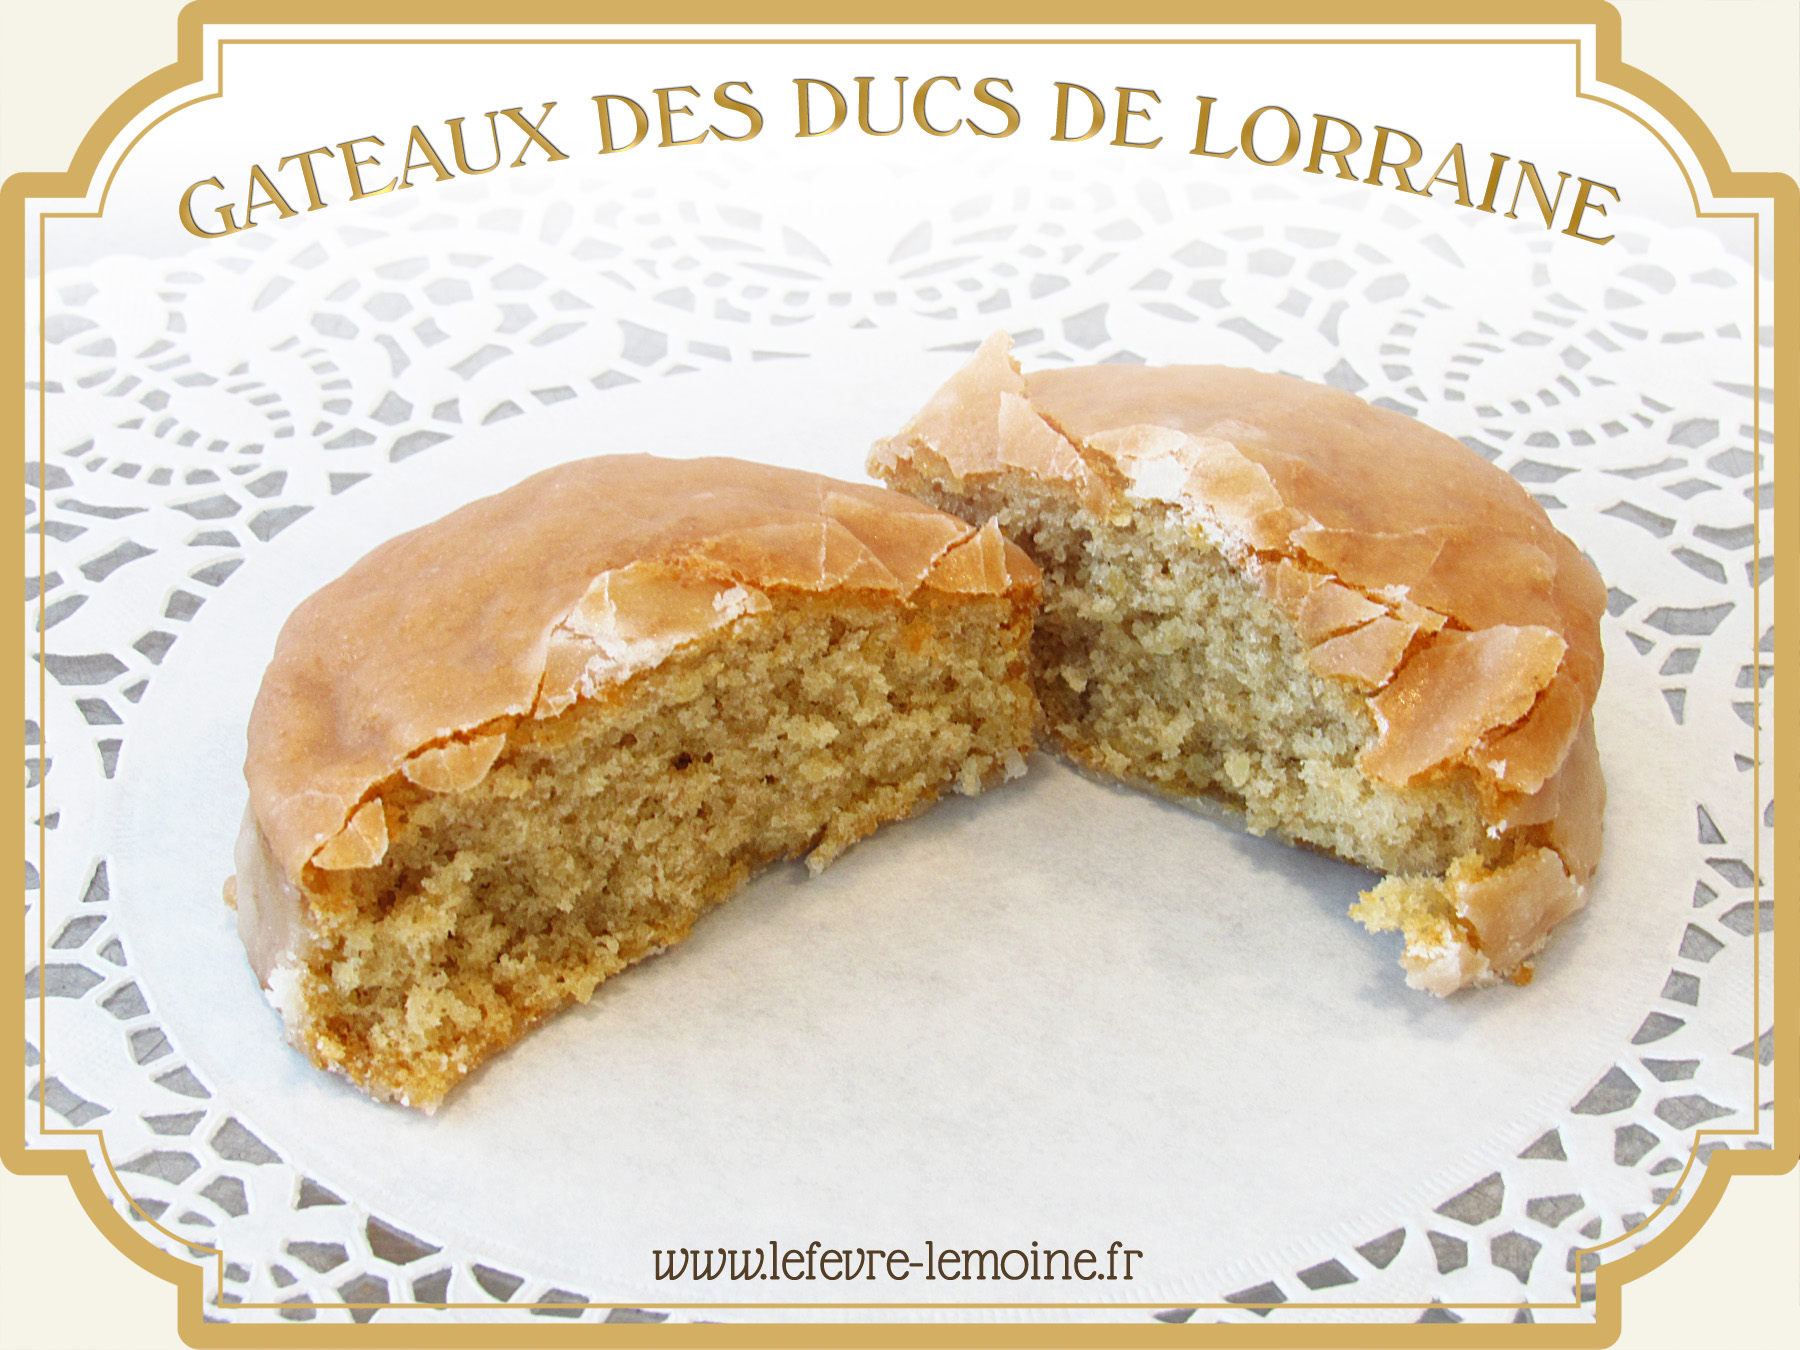 Gâteaux des Ducs de Lorraine Lefèvre-Lemoine, Maison fondée en 1840.